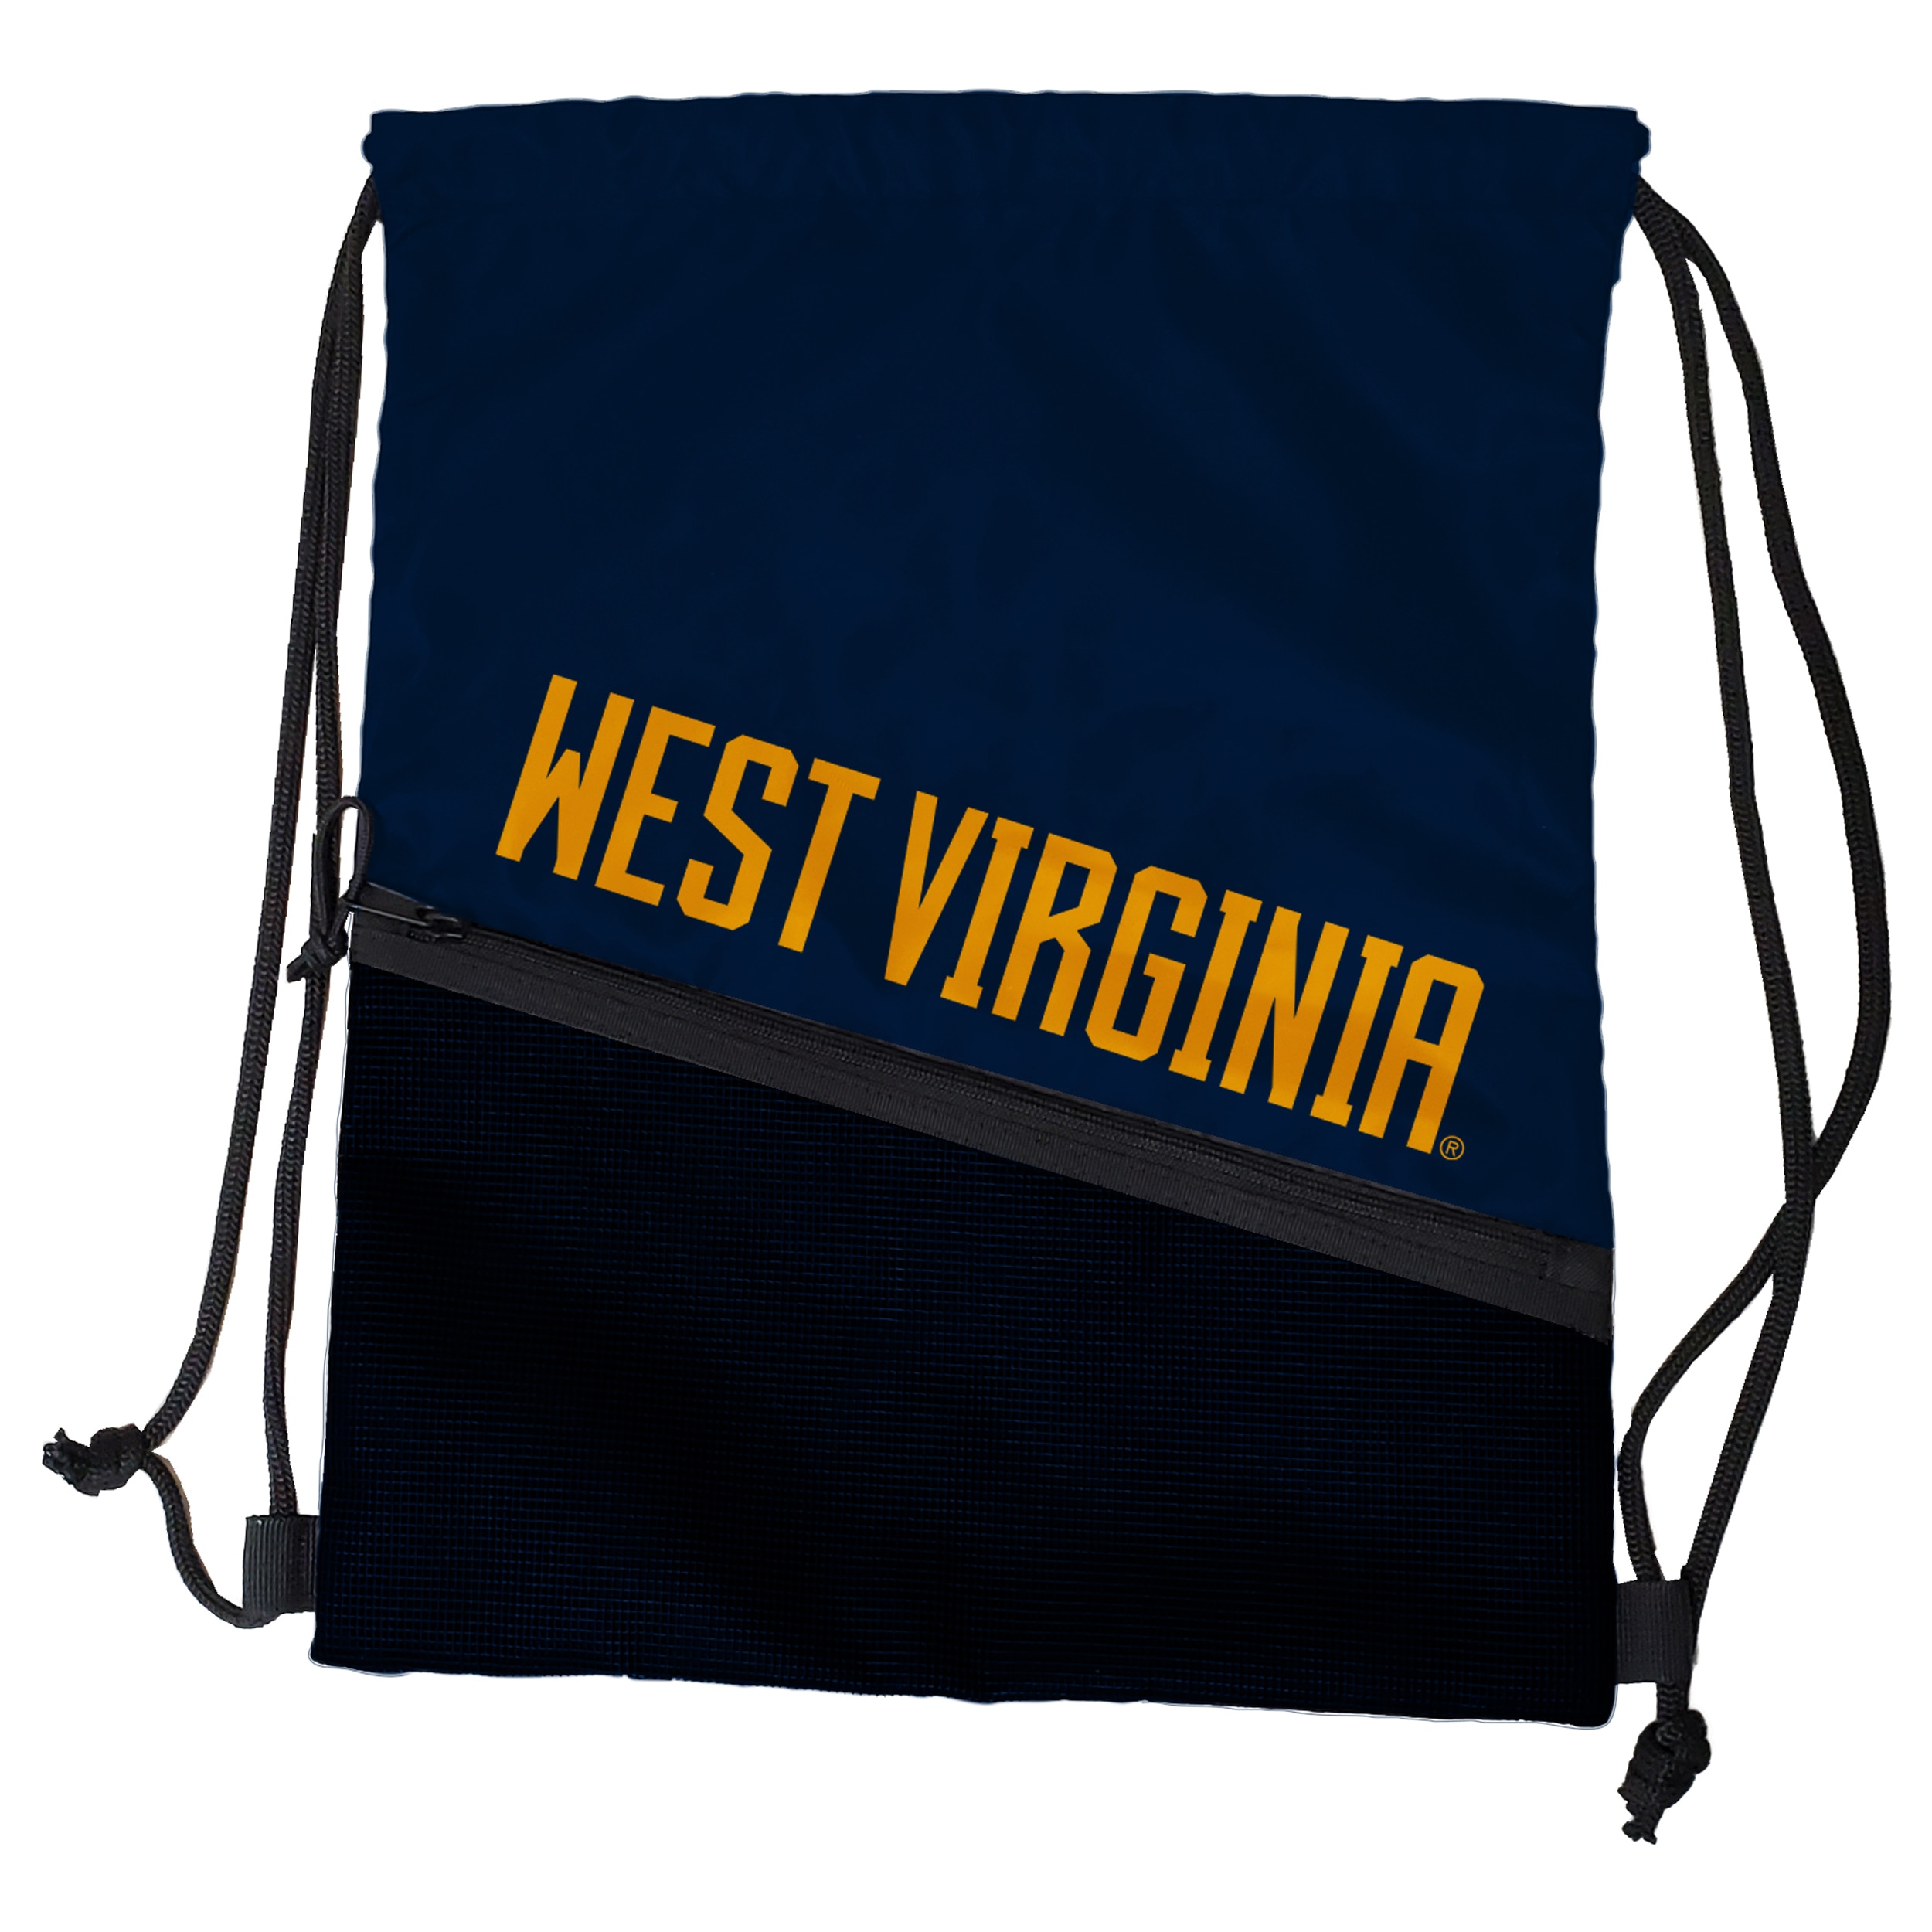 West Virginia Mountaineers 871 Tilt Backsack Backpacks and Bags